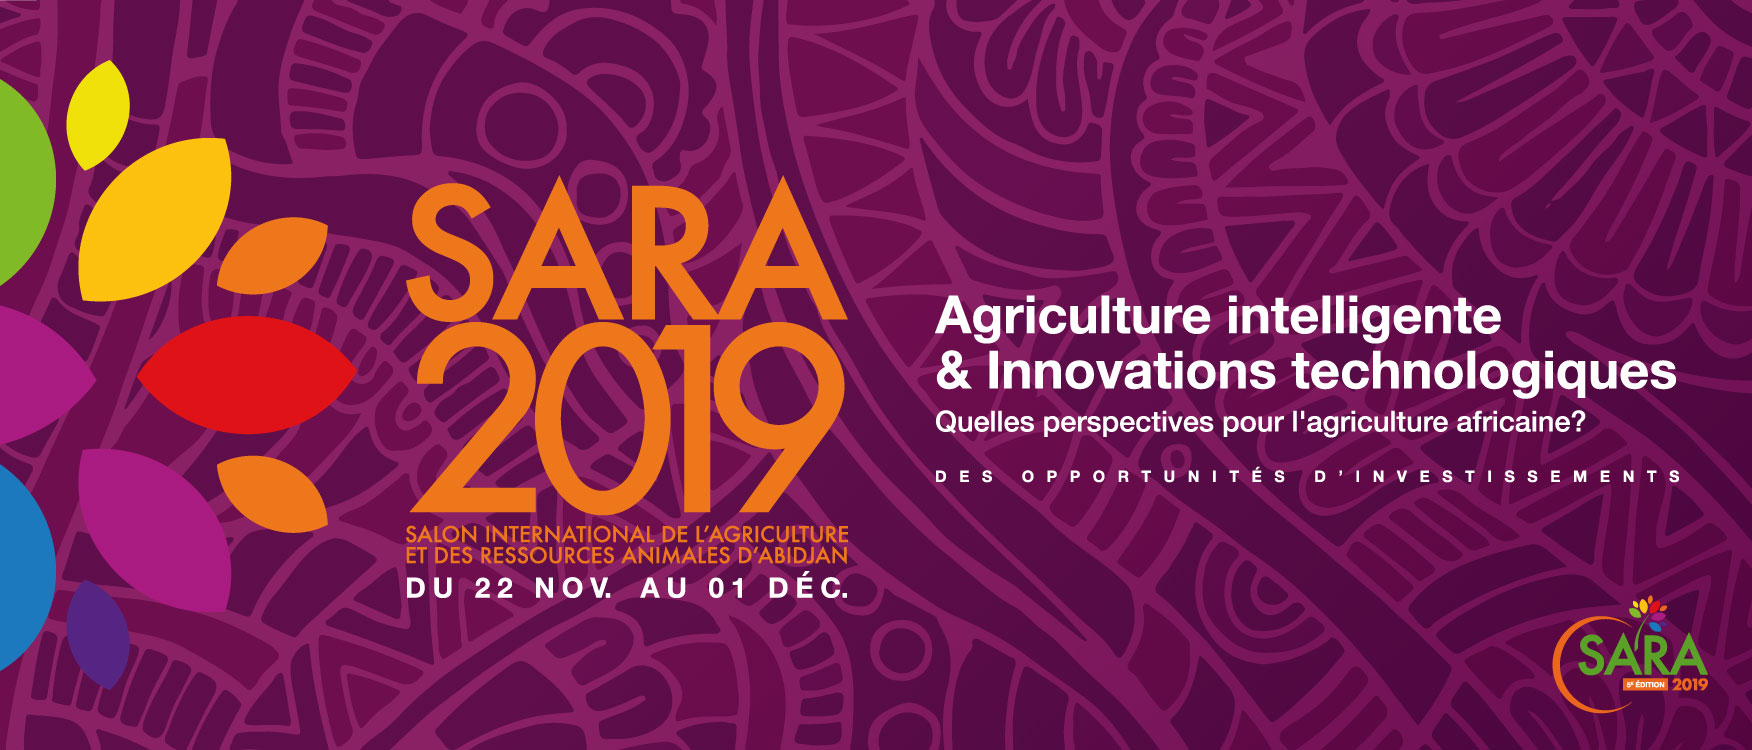 SARA 2019/ Le Salon International qui confirme les potentialités de l’Agriculture du continent africain